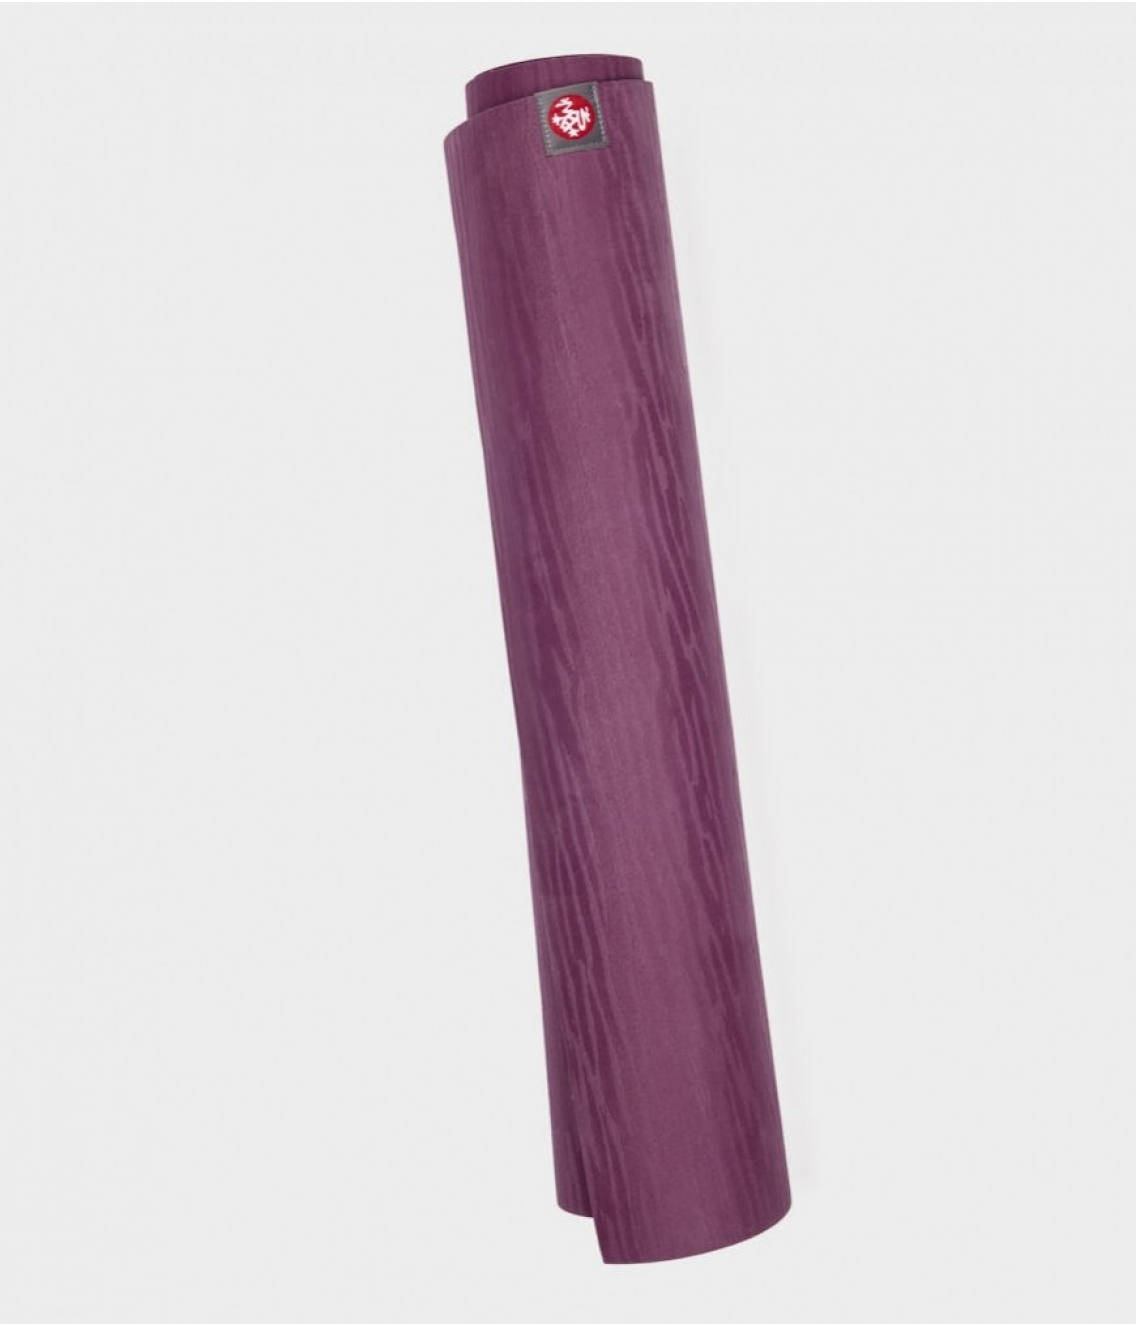 Профессиональный каучуковый коврик для йоги Manduka eKO 200*66*0,5 см - Acai